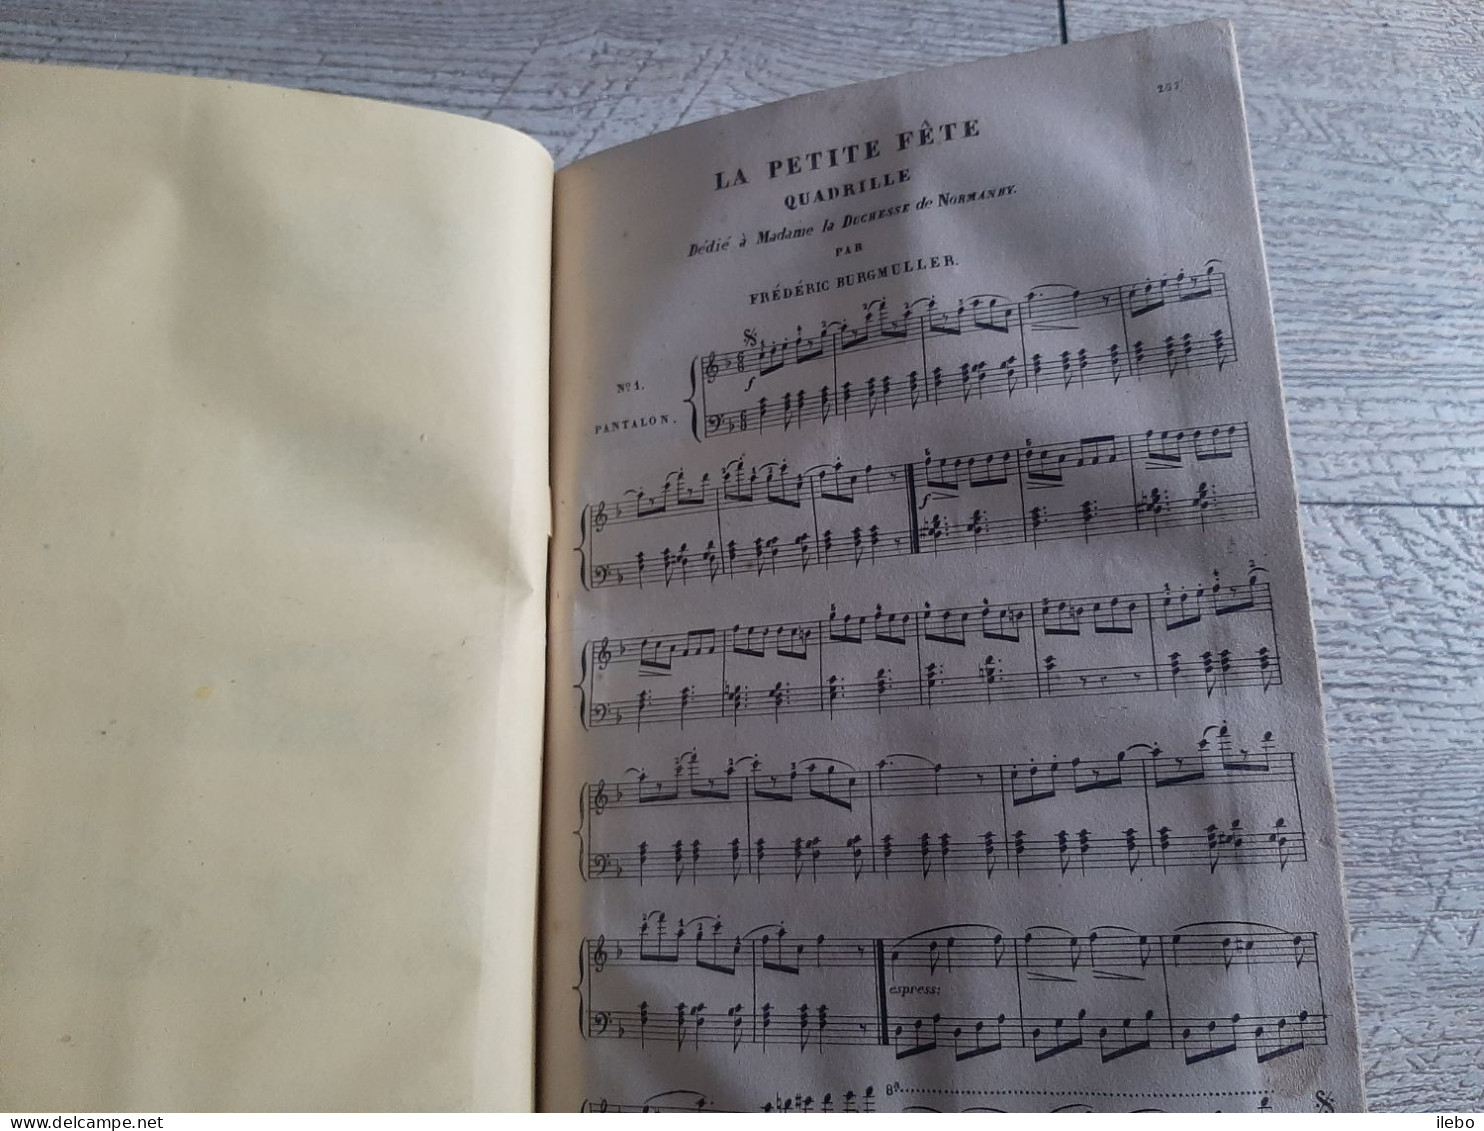 journal des demoiselles 1840 planches dépliantes broderie canevas romans musique gravures mode